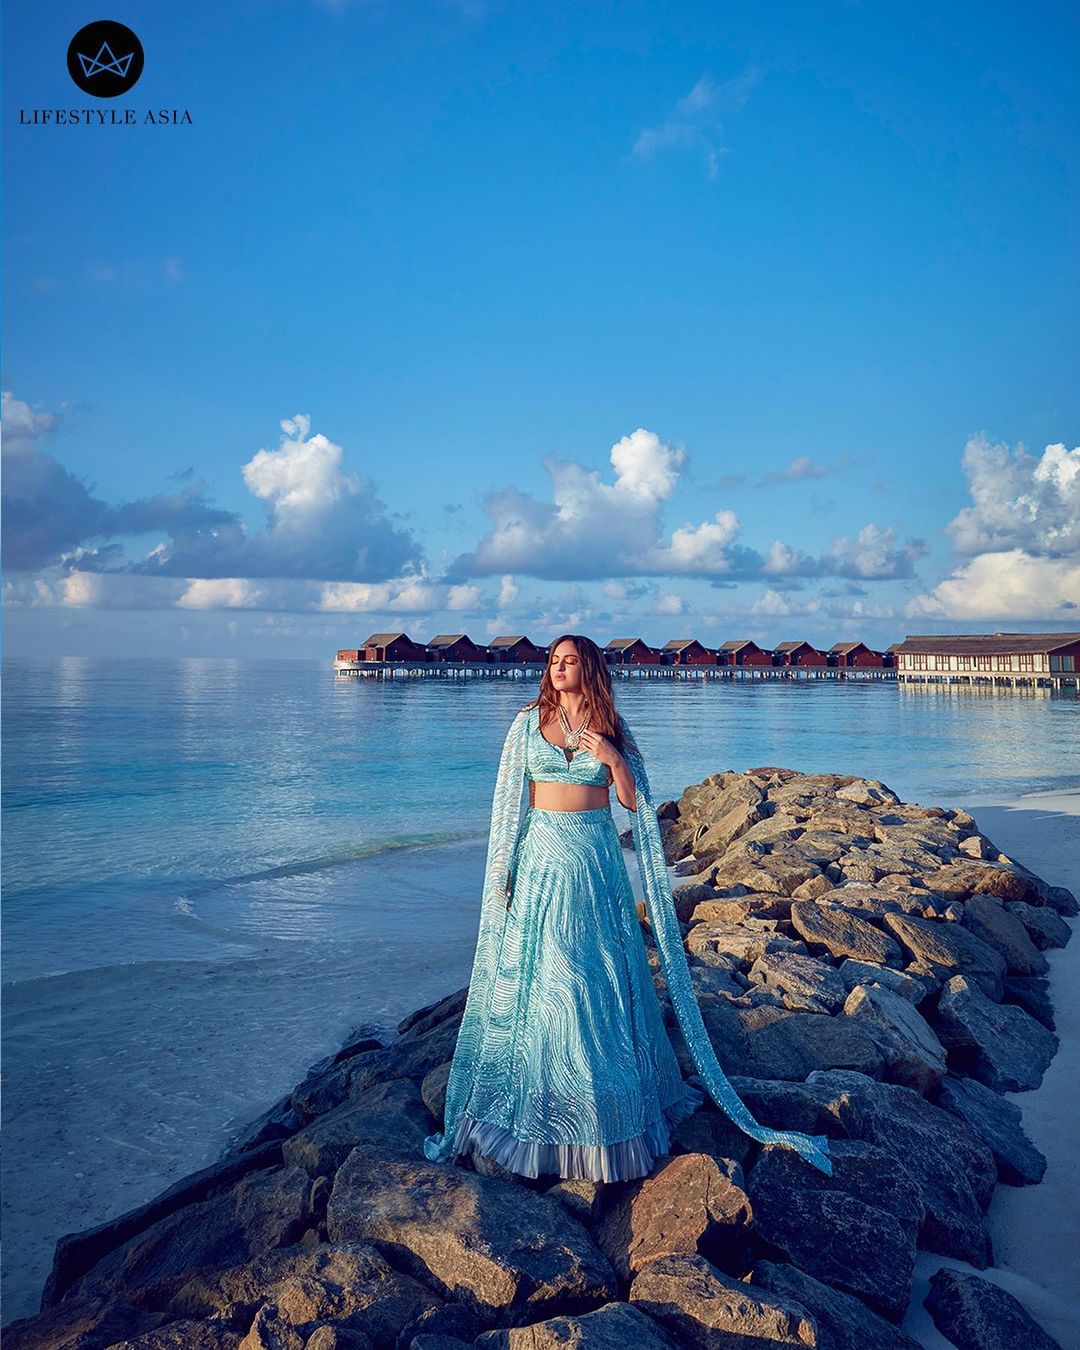 मालदीवच्या समुद्रकिनारी सोनाक्षीने फोटोसाठी पोझ दिल्या आहेत.